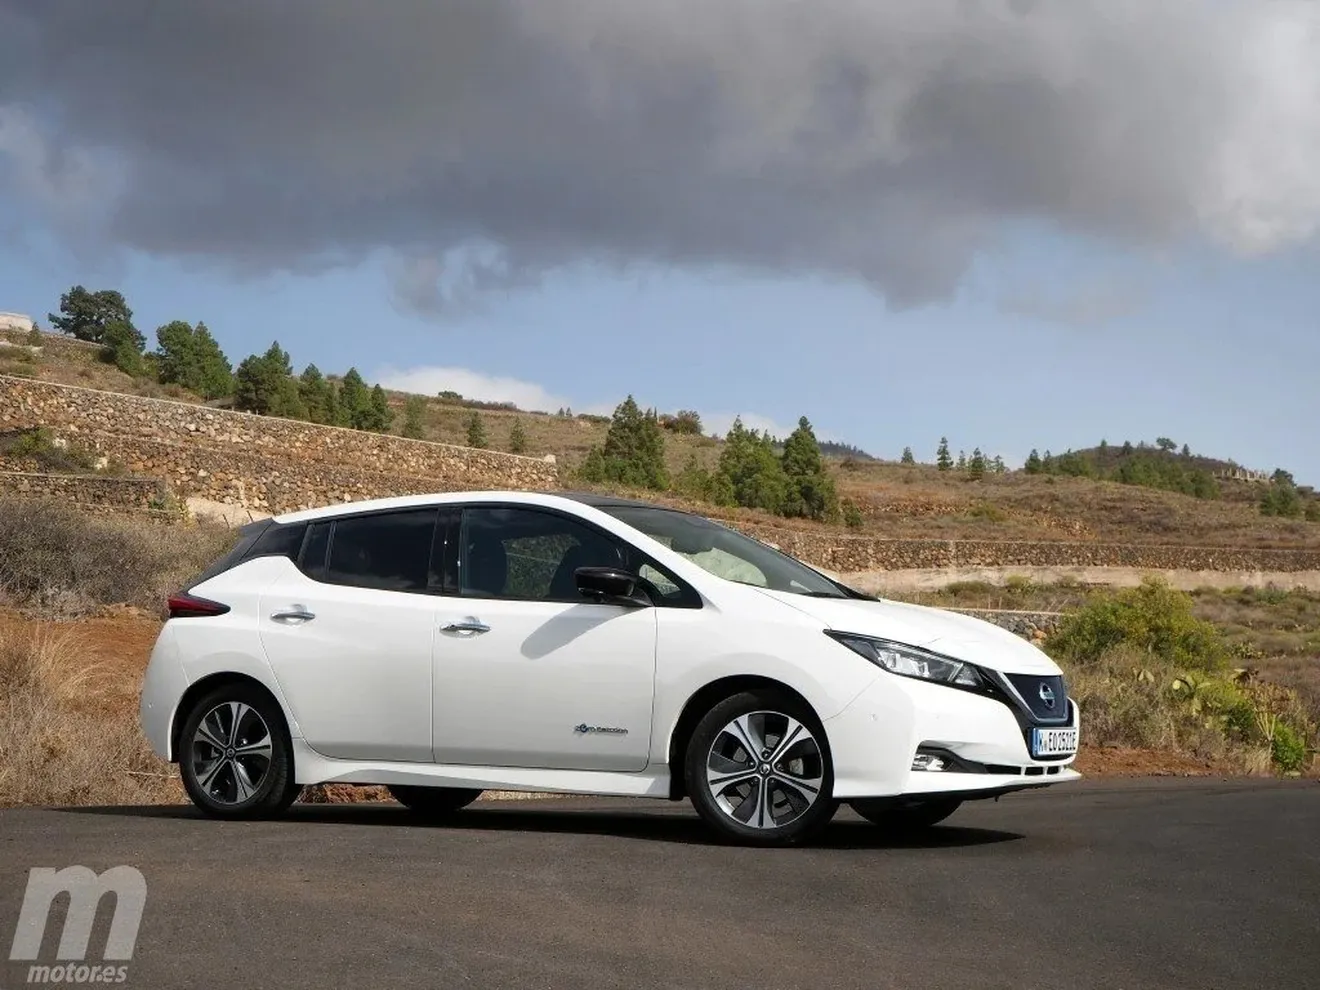 Estudio de Nissan: los coches eléctricos recorren más kilómetros que los de combustión